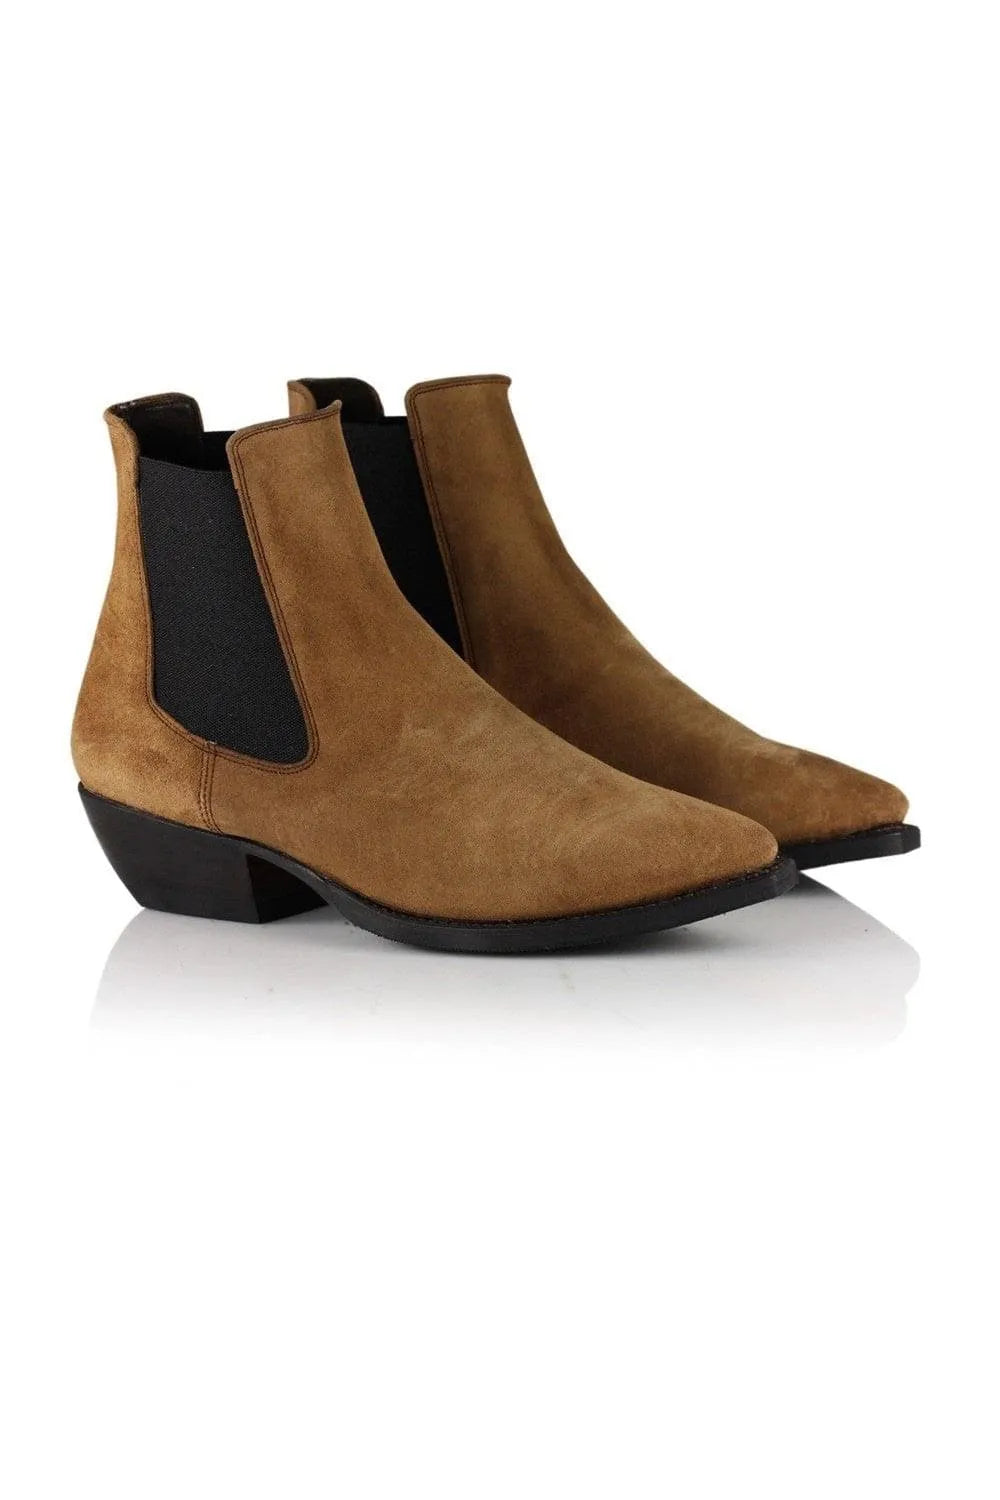 Notabene | Ankelstøvler | Cordova Boots, brun